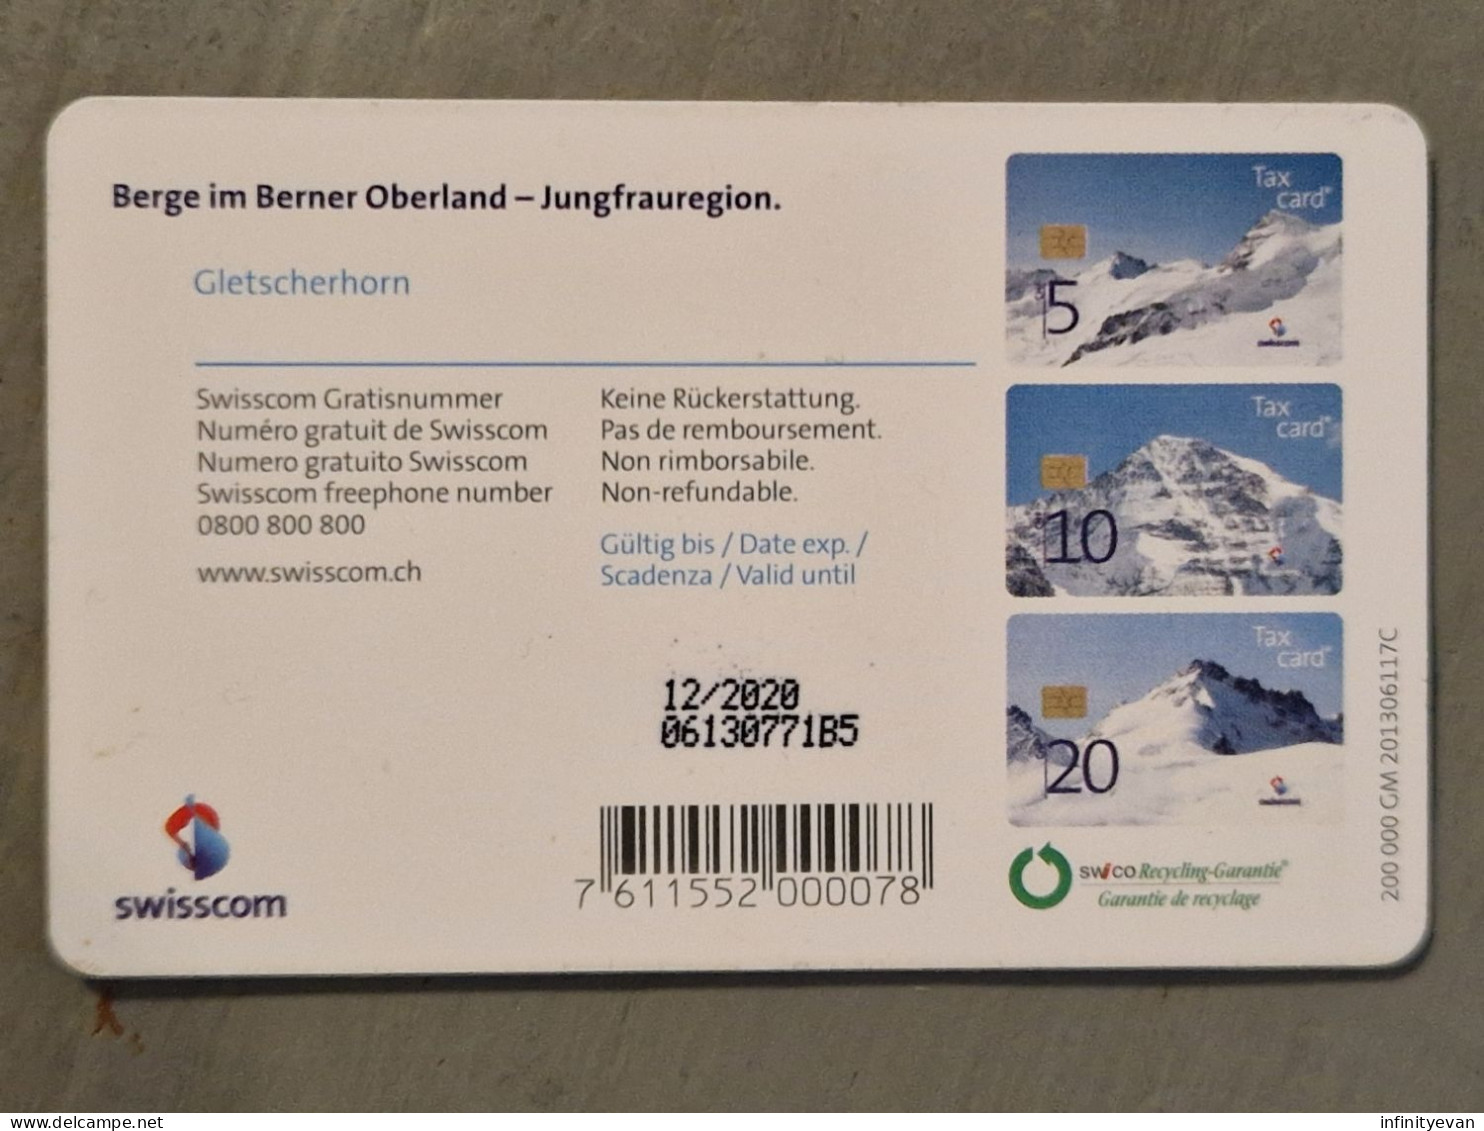 Tax Card 20 CHF MONTAGNE 12/2020 - Switzerland